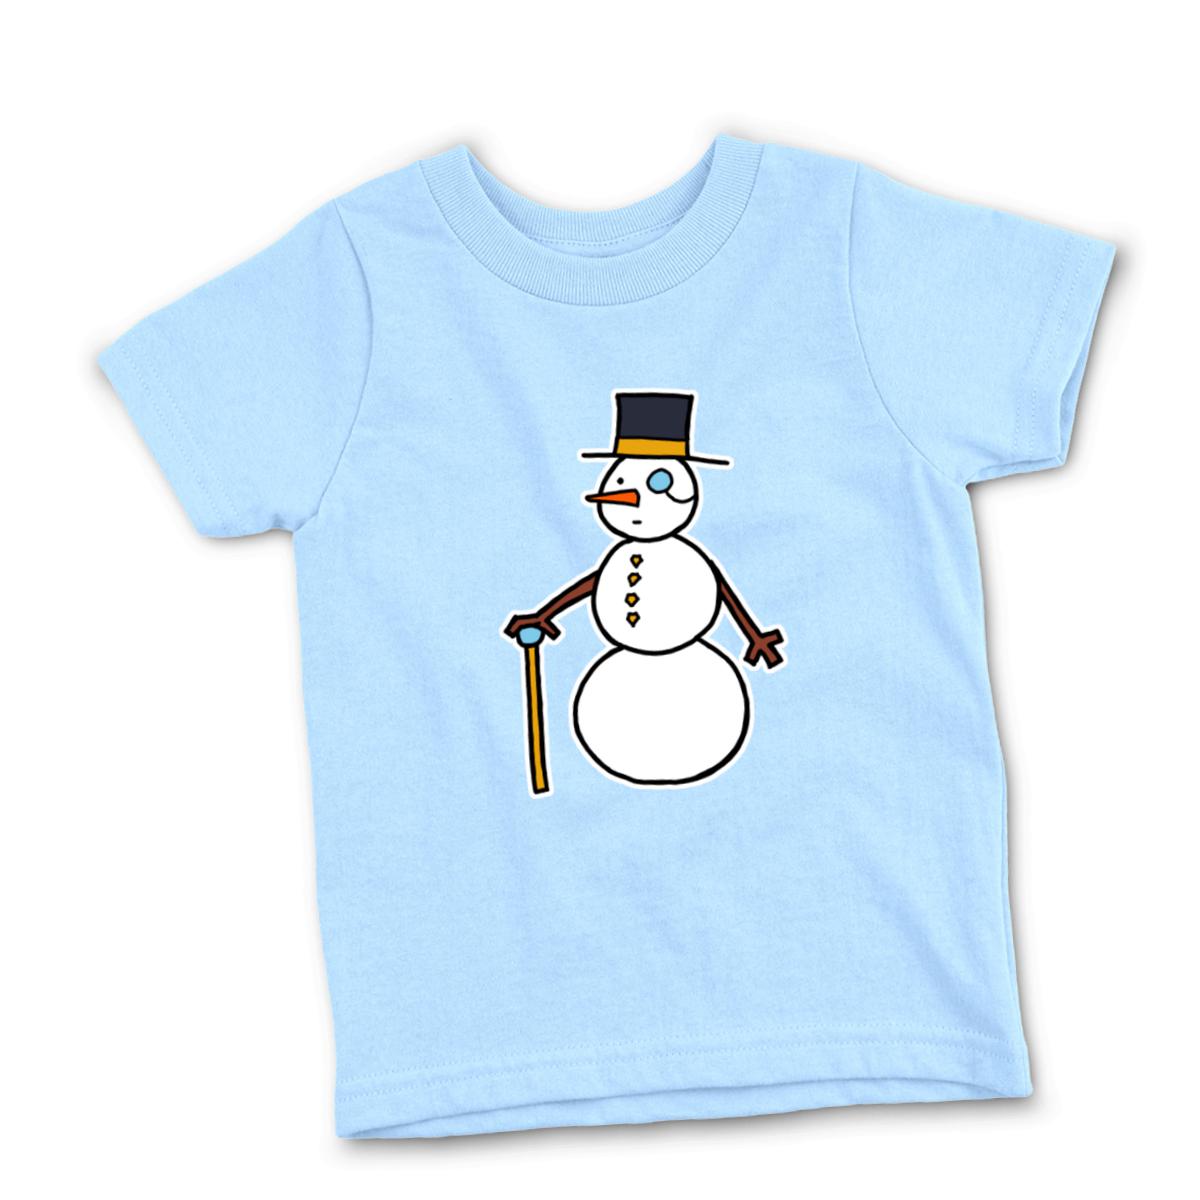 Dapper Snowman Kid's Tee Small light-blue